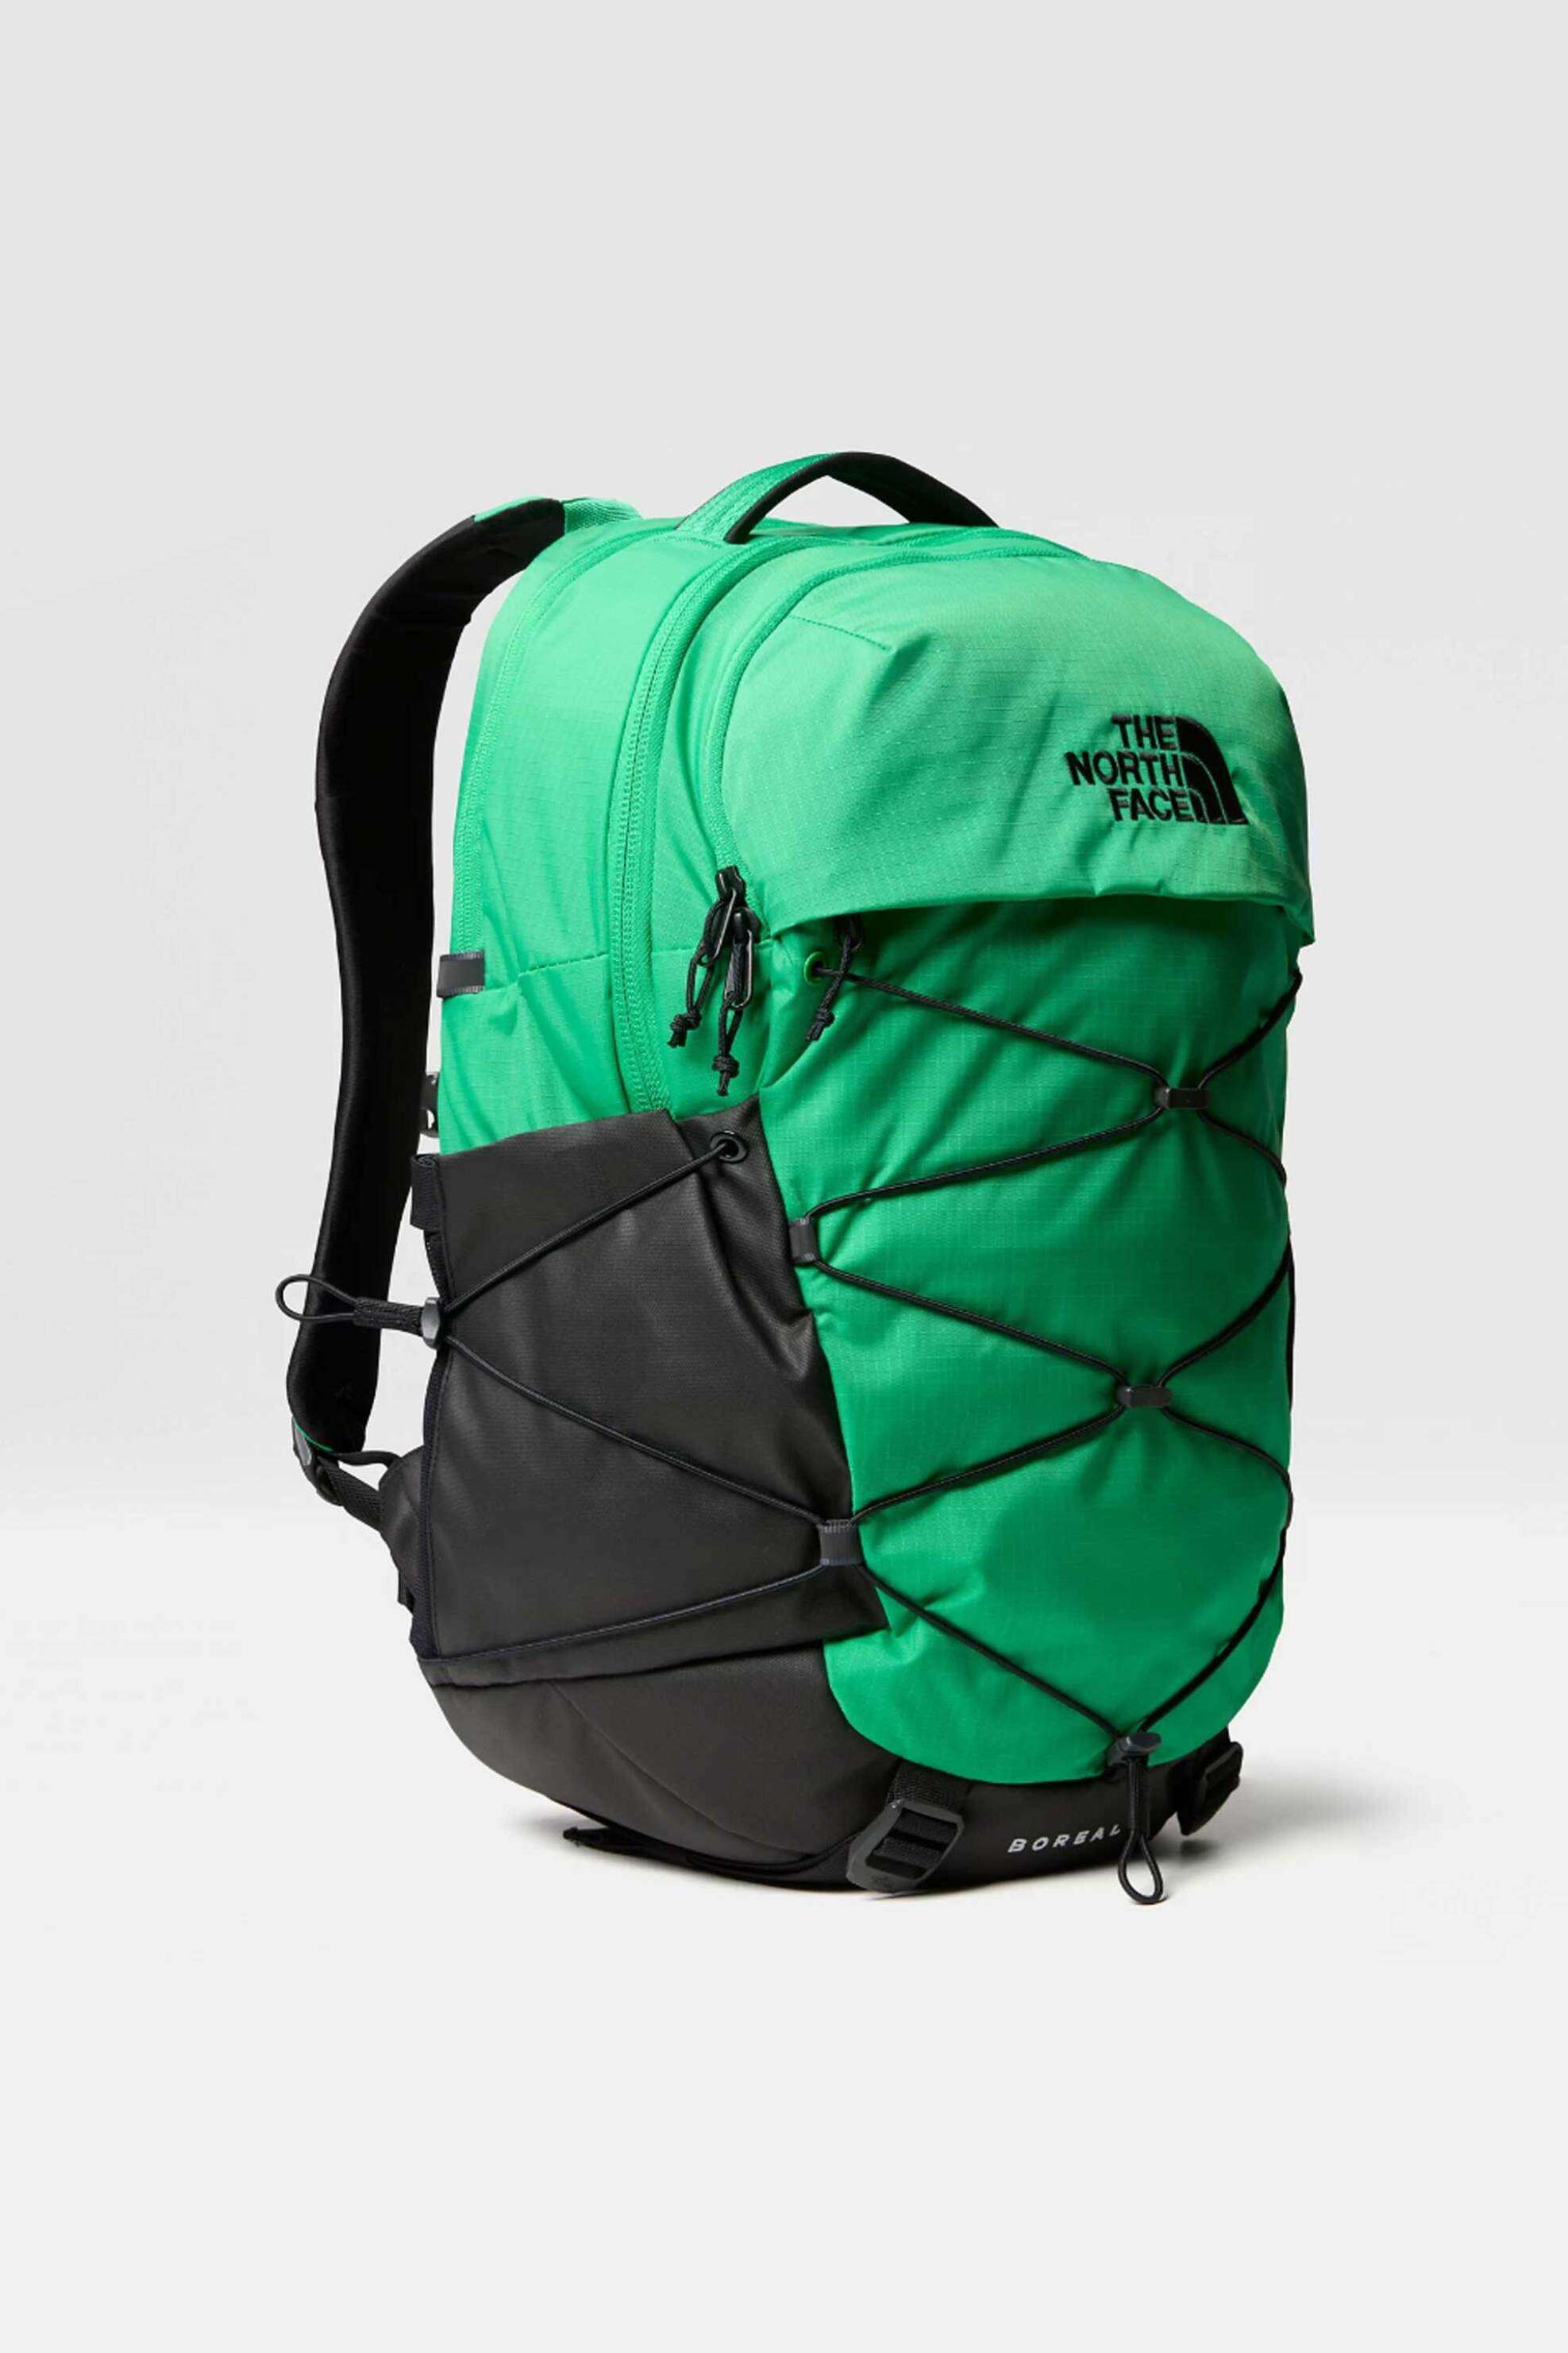 Ανδρική Μόδα > Ανδρικές Τσάντες > Ανδρικά Σακίδια & Backpacks The North Face unisex backpack δίχρωμο με κεντημένο contrast λογότυπο "Borealis" - NF0A52SEROJ1 Πράσινο Tropical